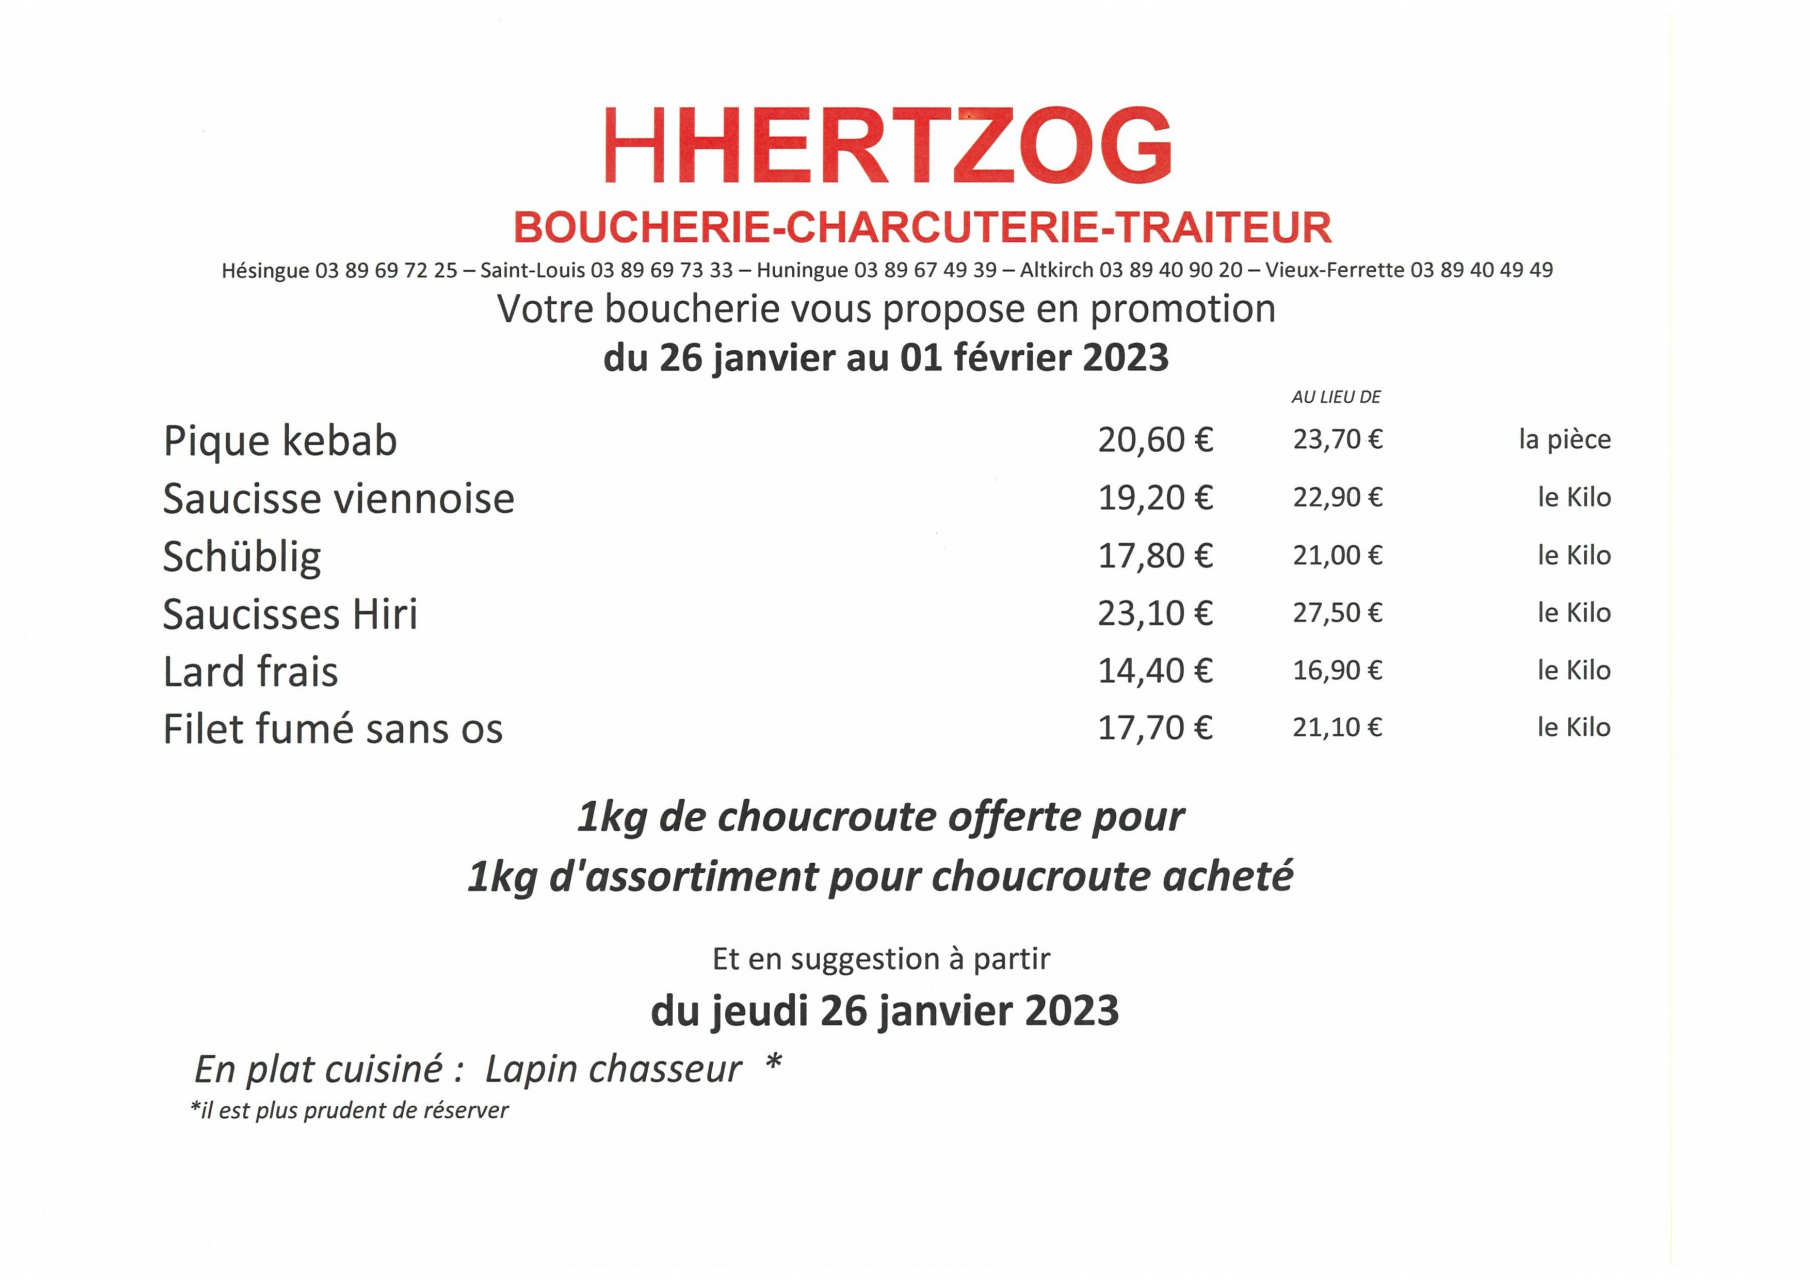 BOUCHERIE HERTZOG - Promotions du 26/01 au 01/02